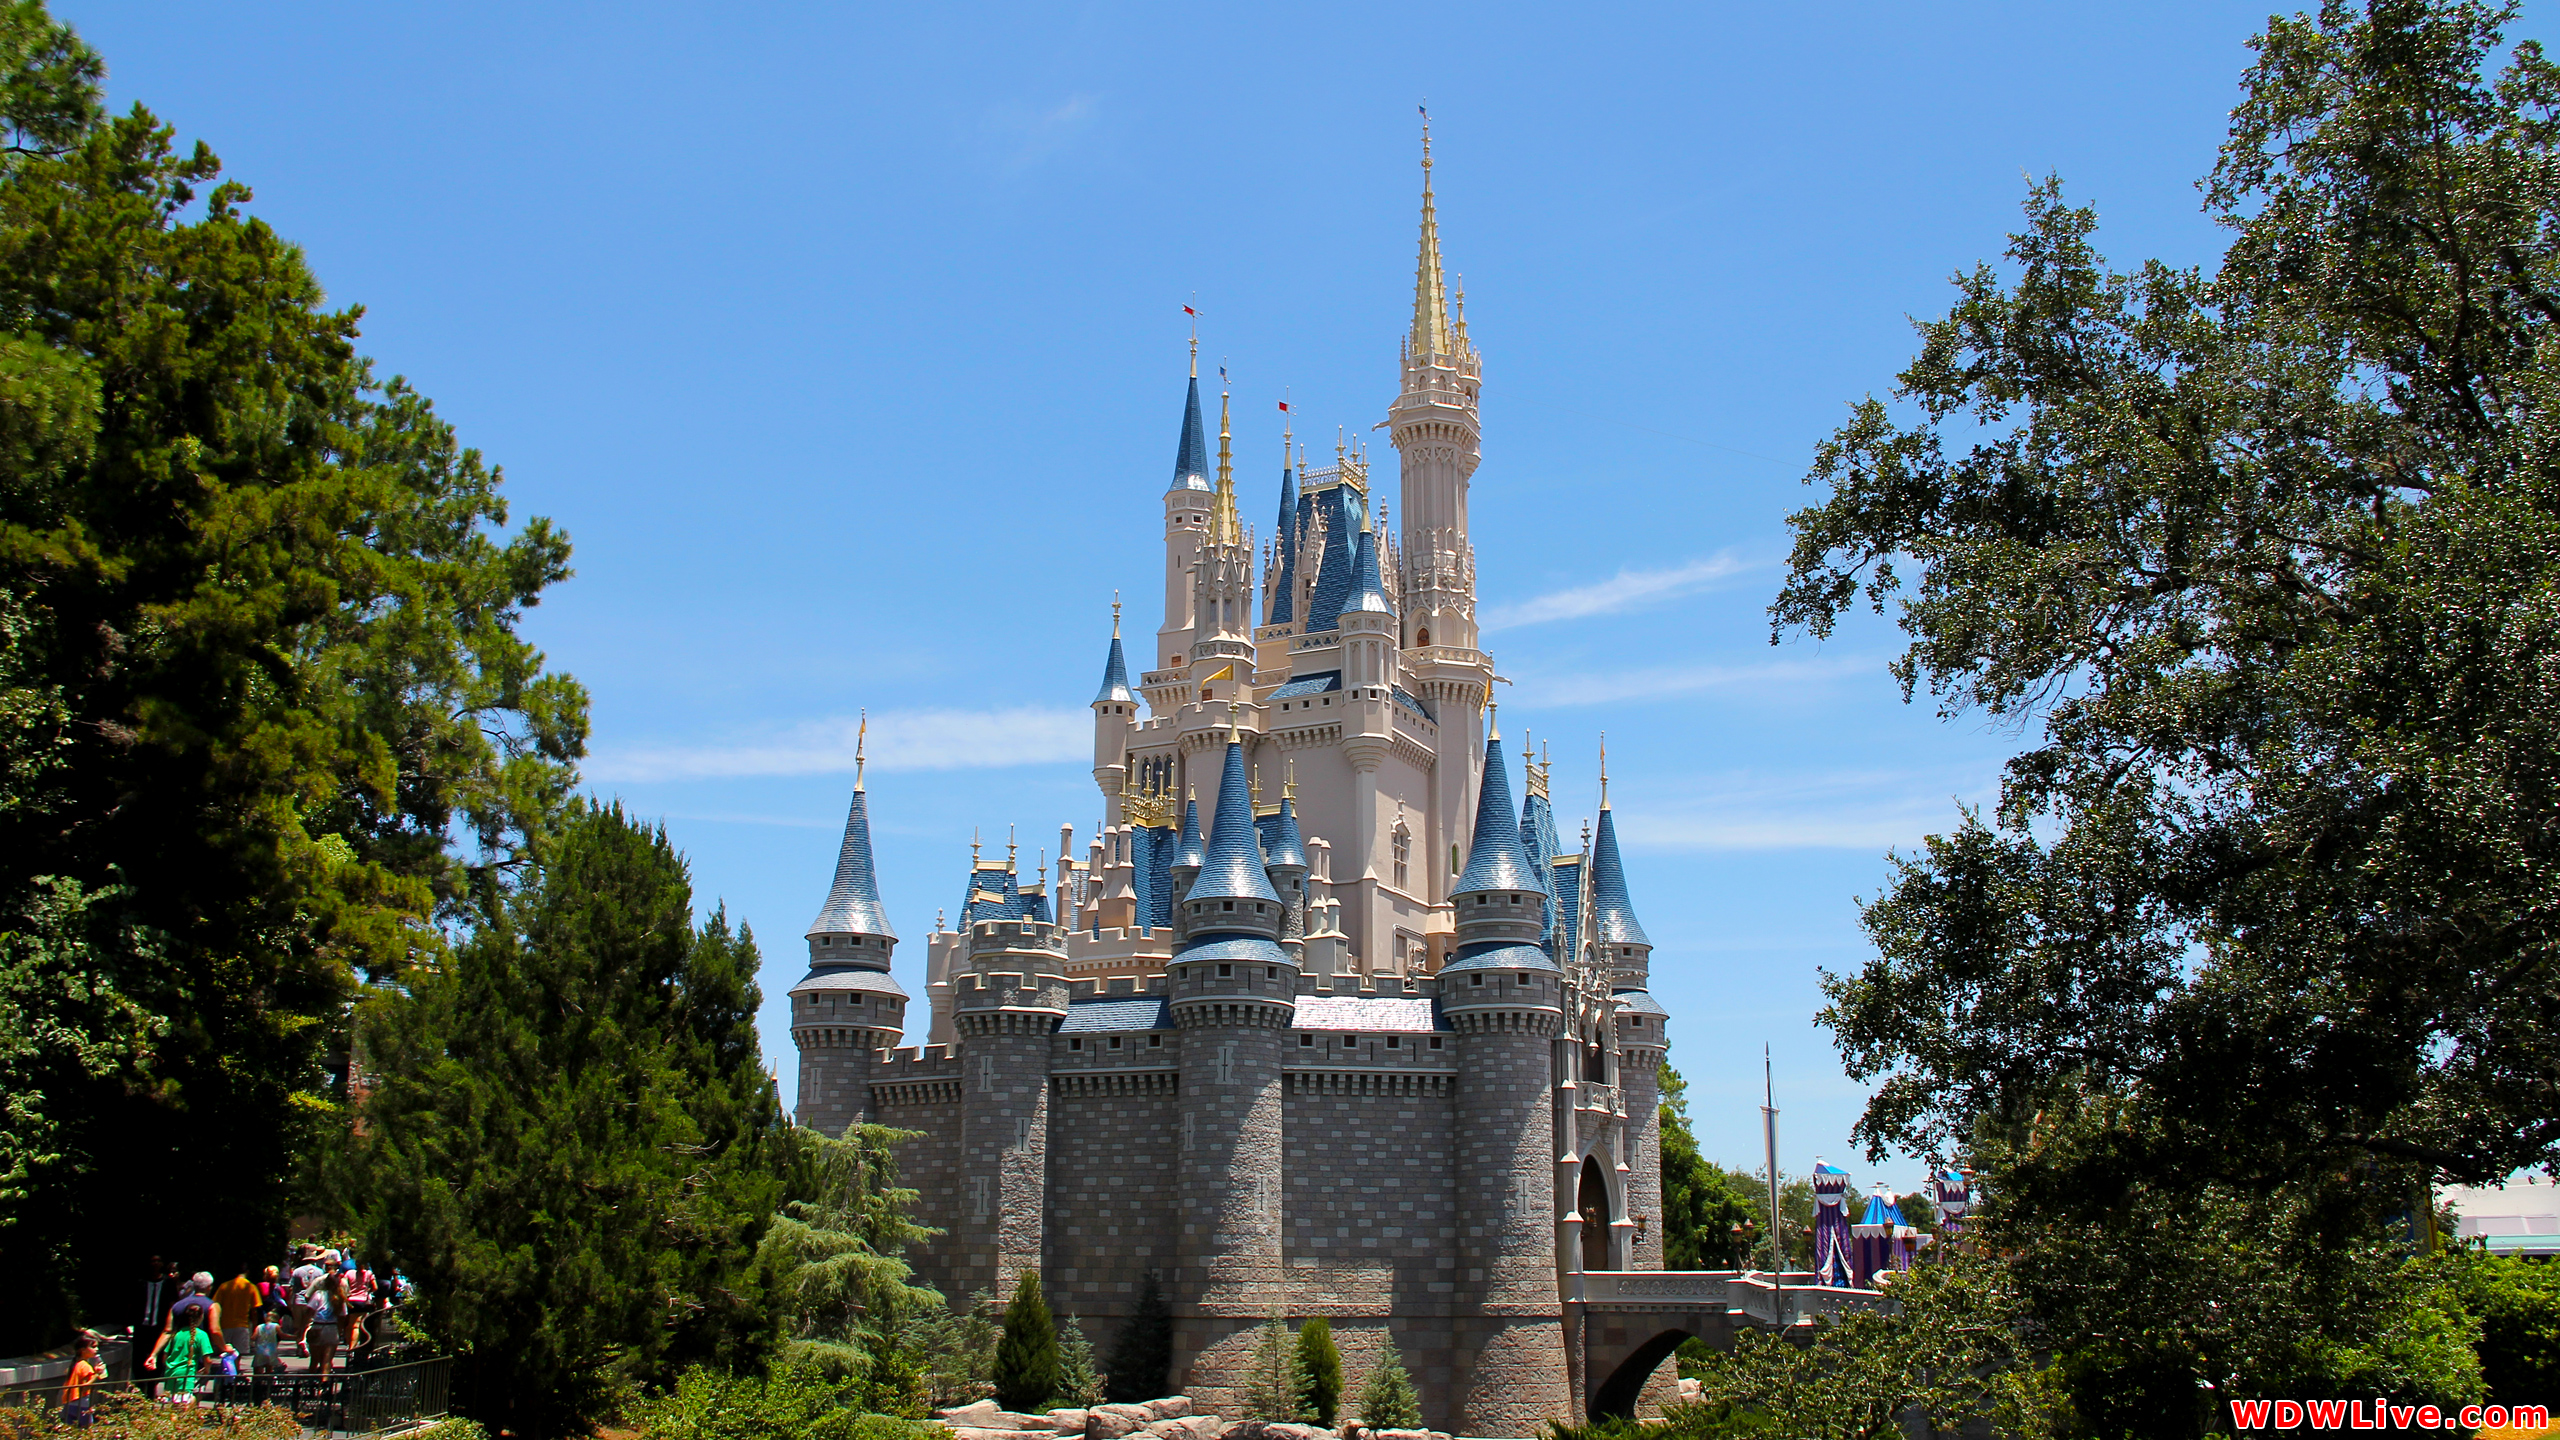 Cinderella Castle Wallpaper